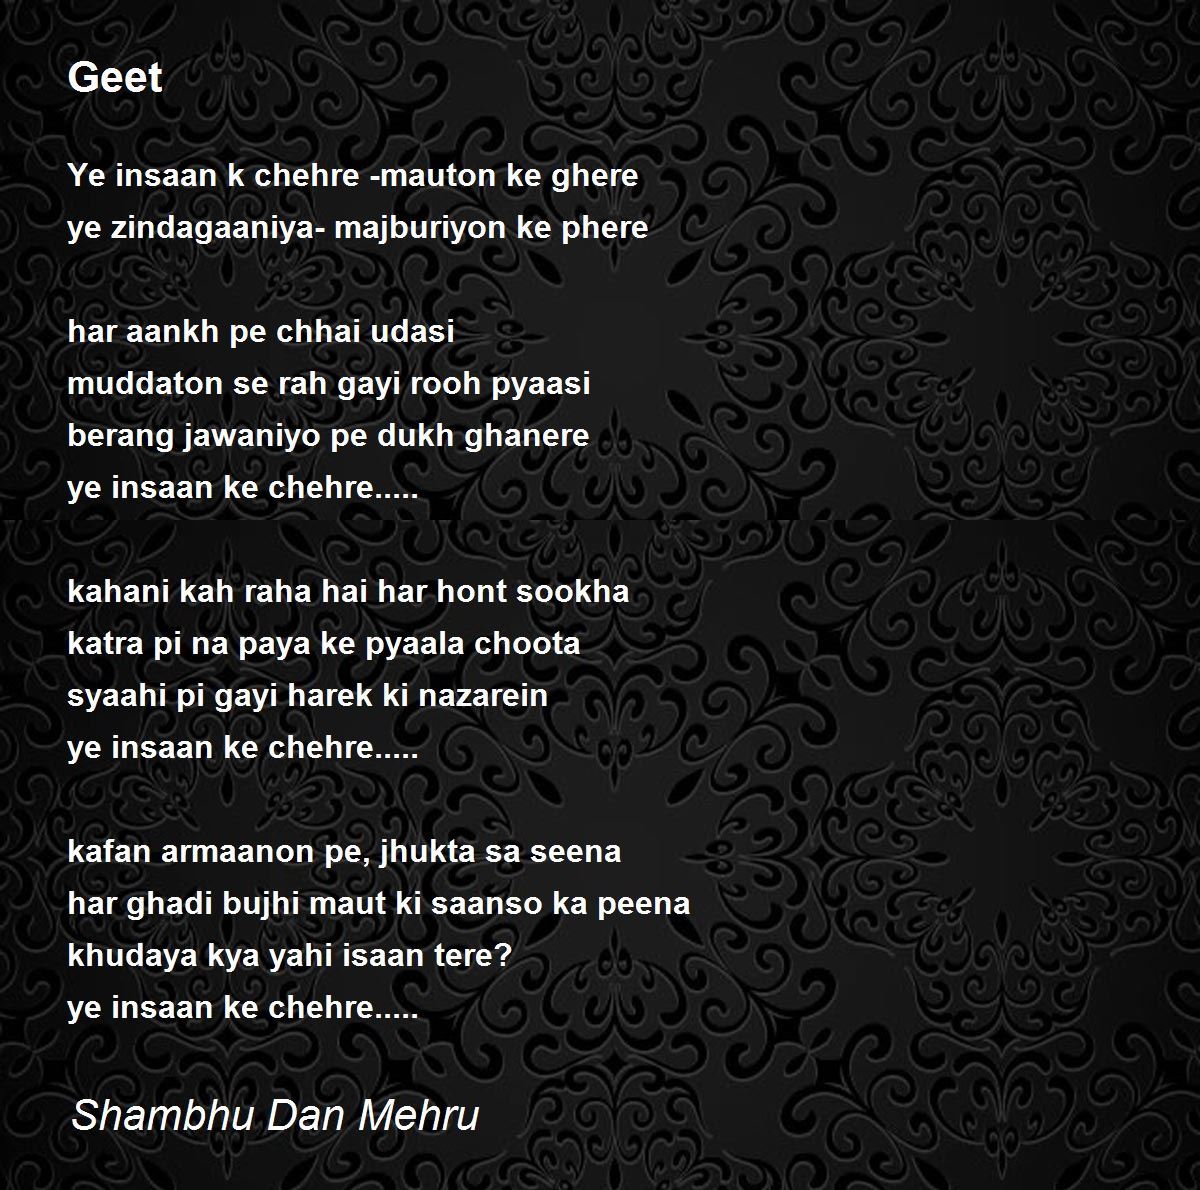 Geet - Geet Poem by Shambhu Dan Mehru